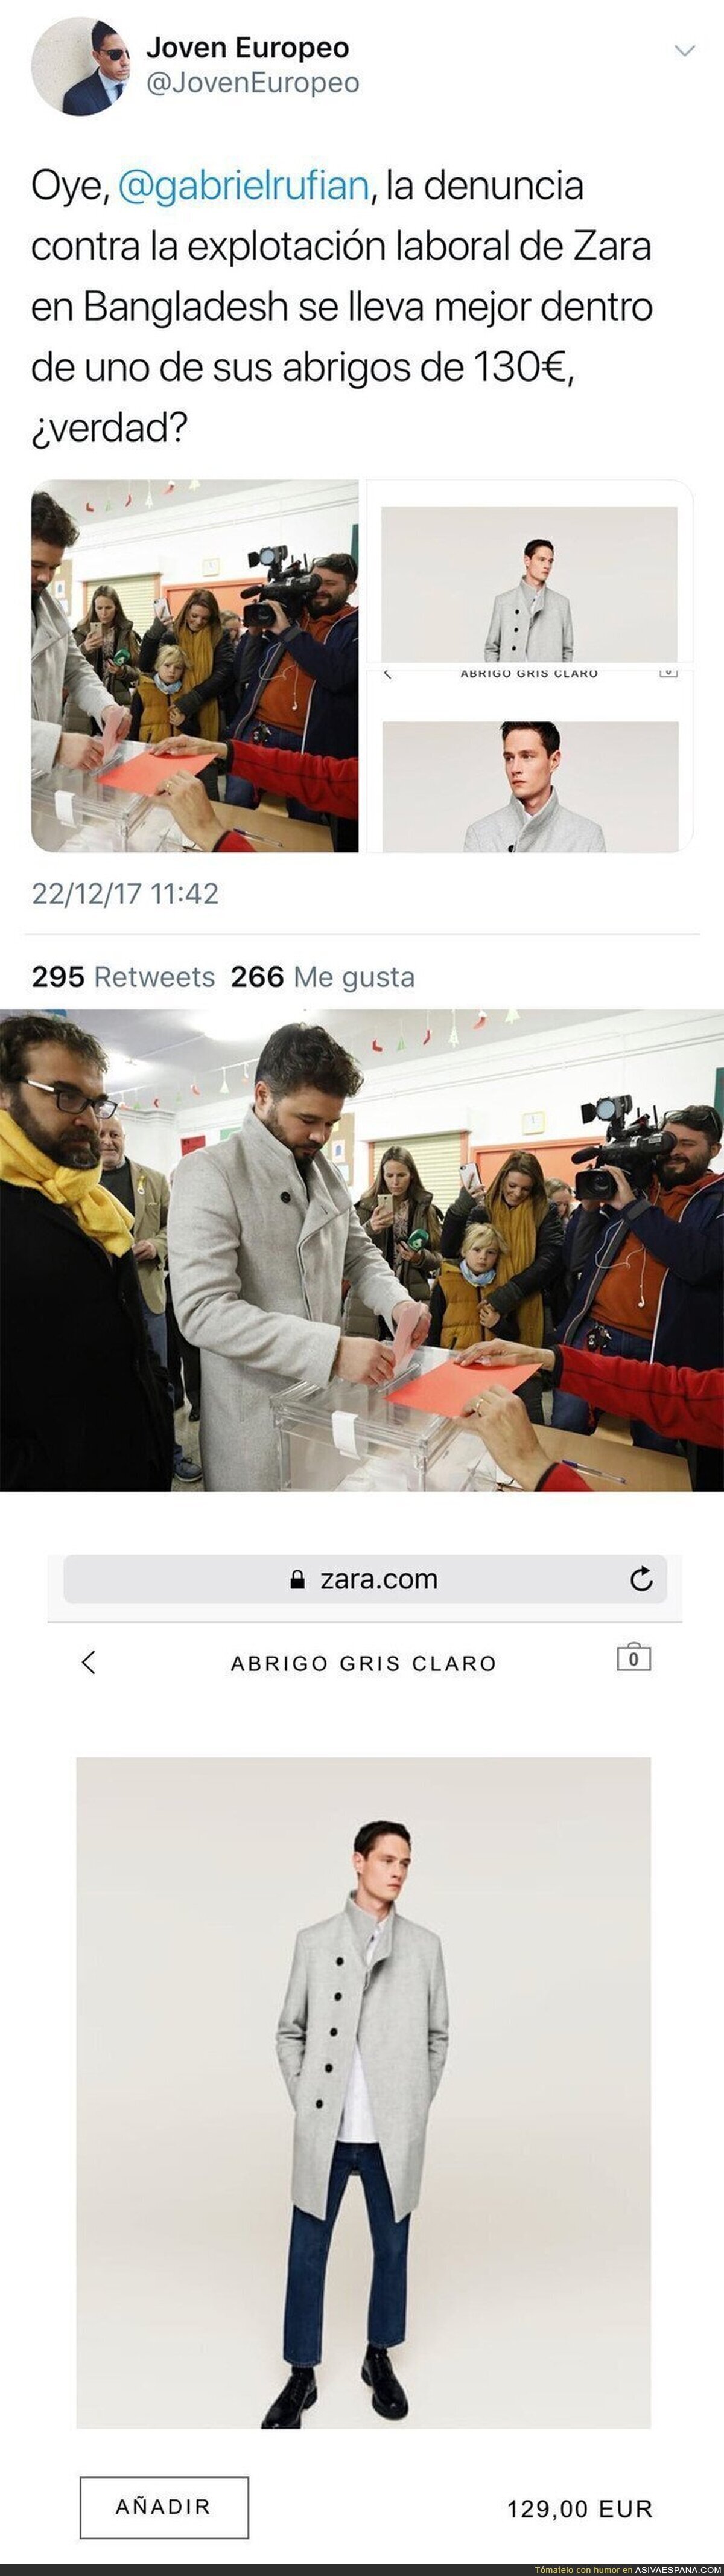 Descubren el precio del abrigo con el que Gabriel Rufián fue a votar a las elecciones